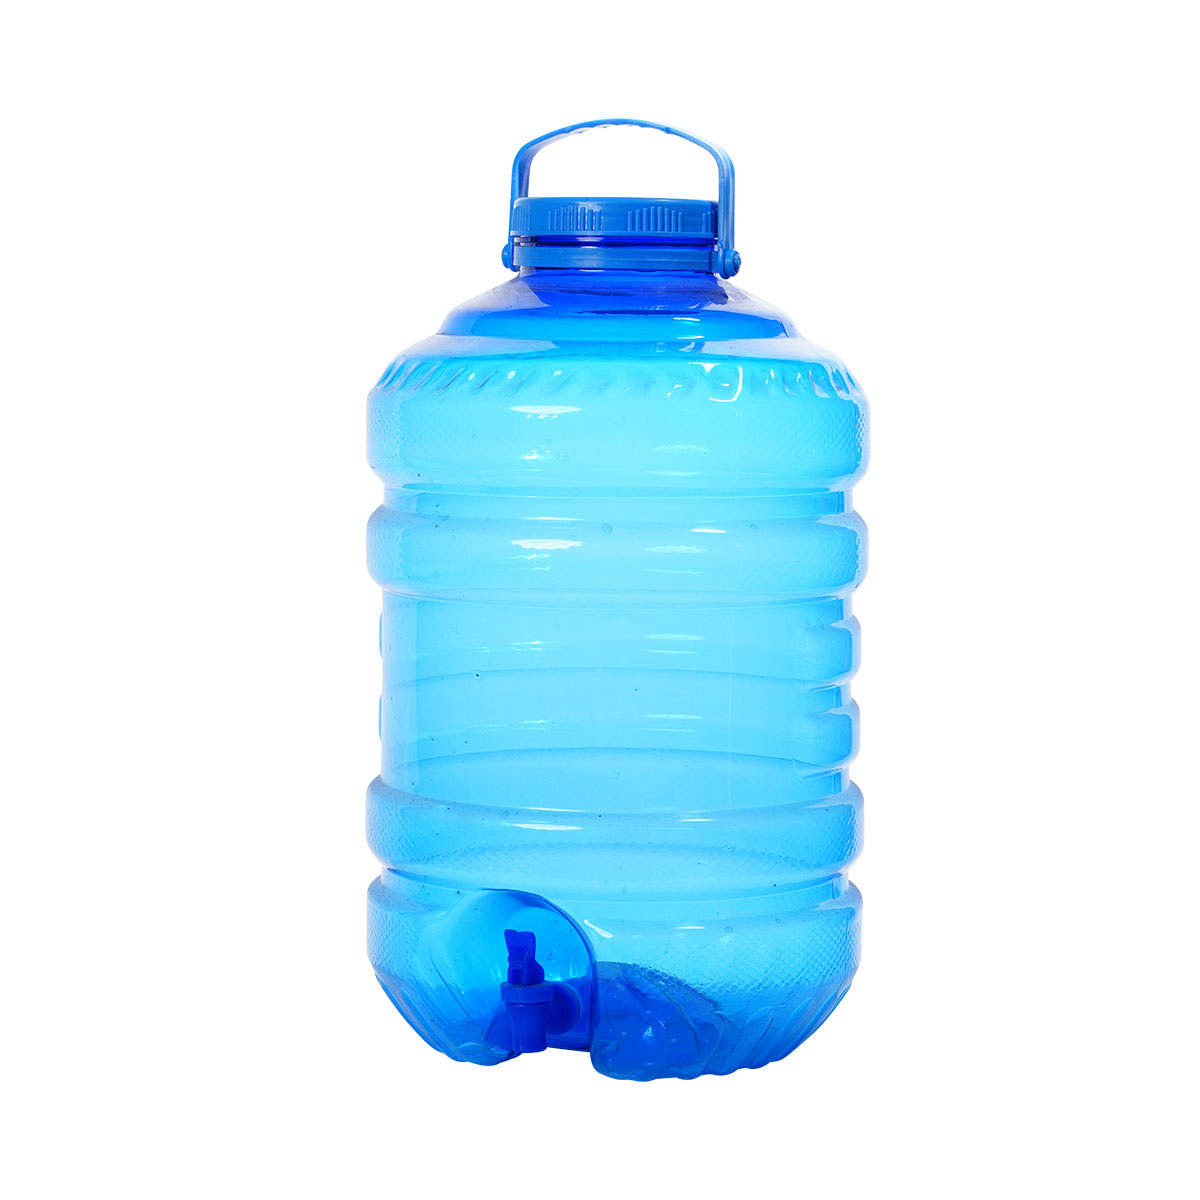 Big Neck 5-gallon Bottle with Smart Faucet